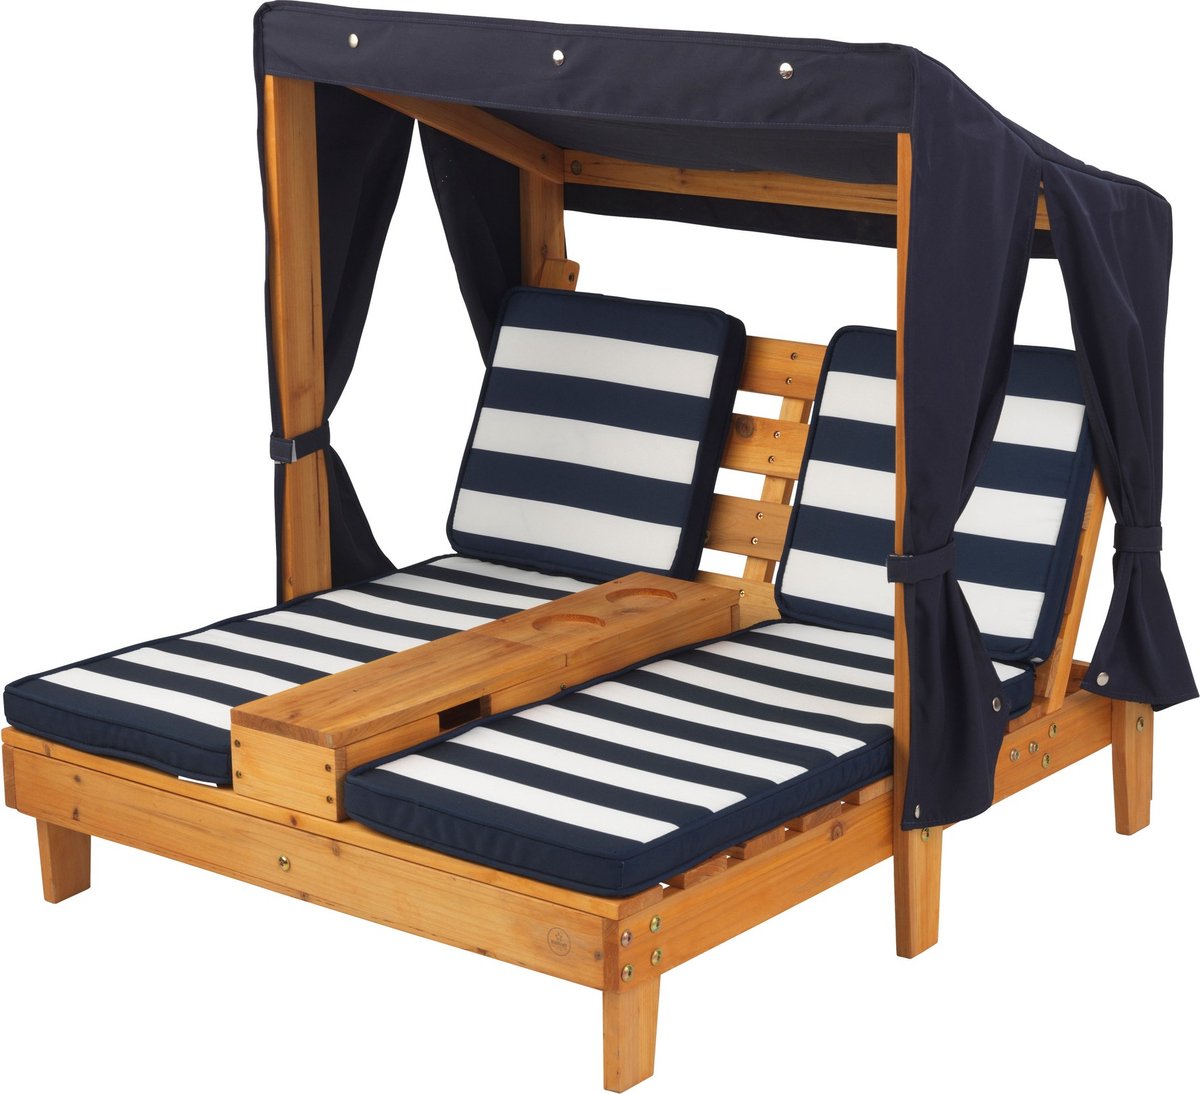 KidKraft Tweepersoons chaise longue met bekerhouders - Honingkleur met blauwe en witte strepen